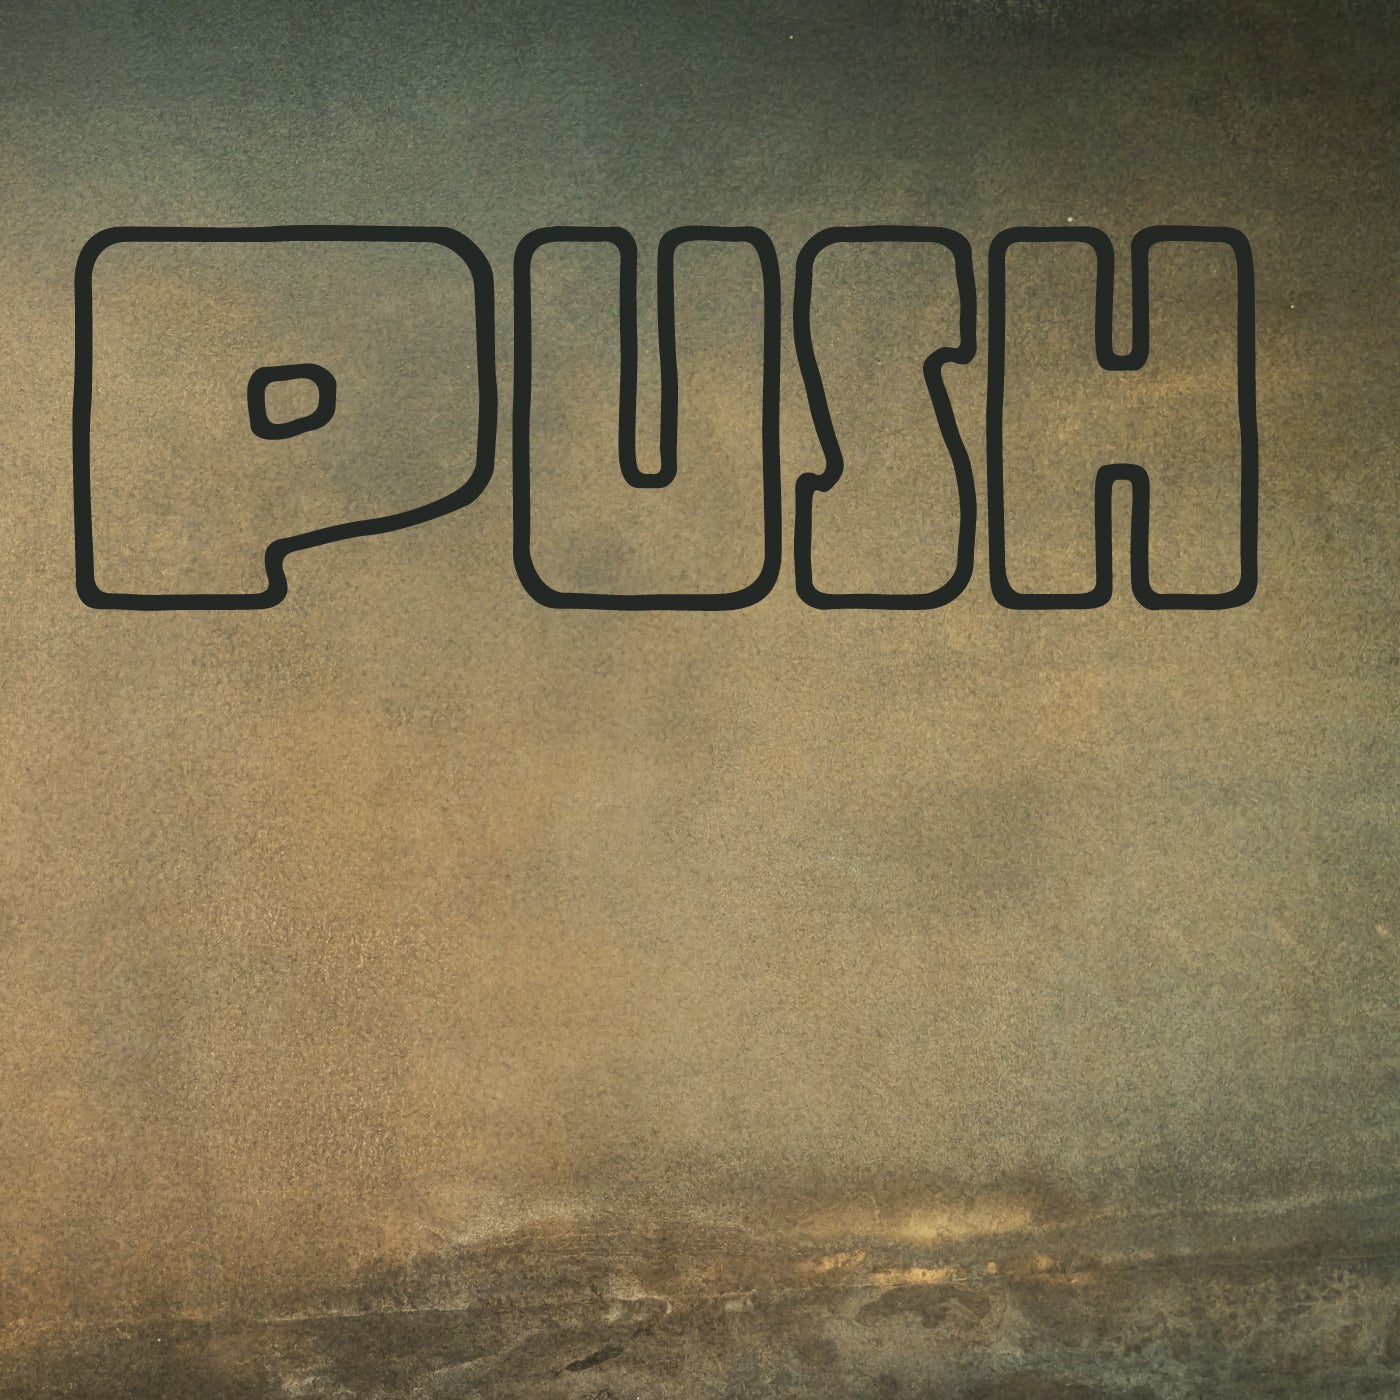 Push - Original Mix